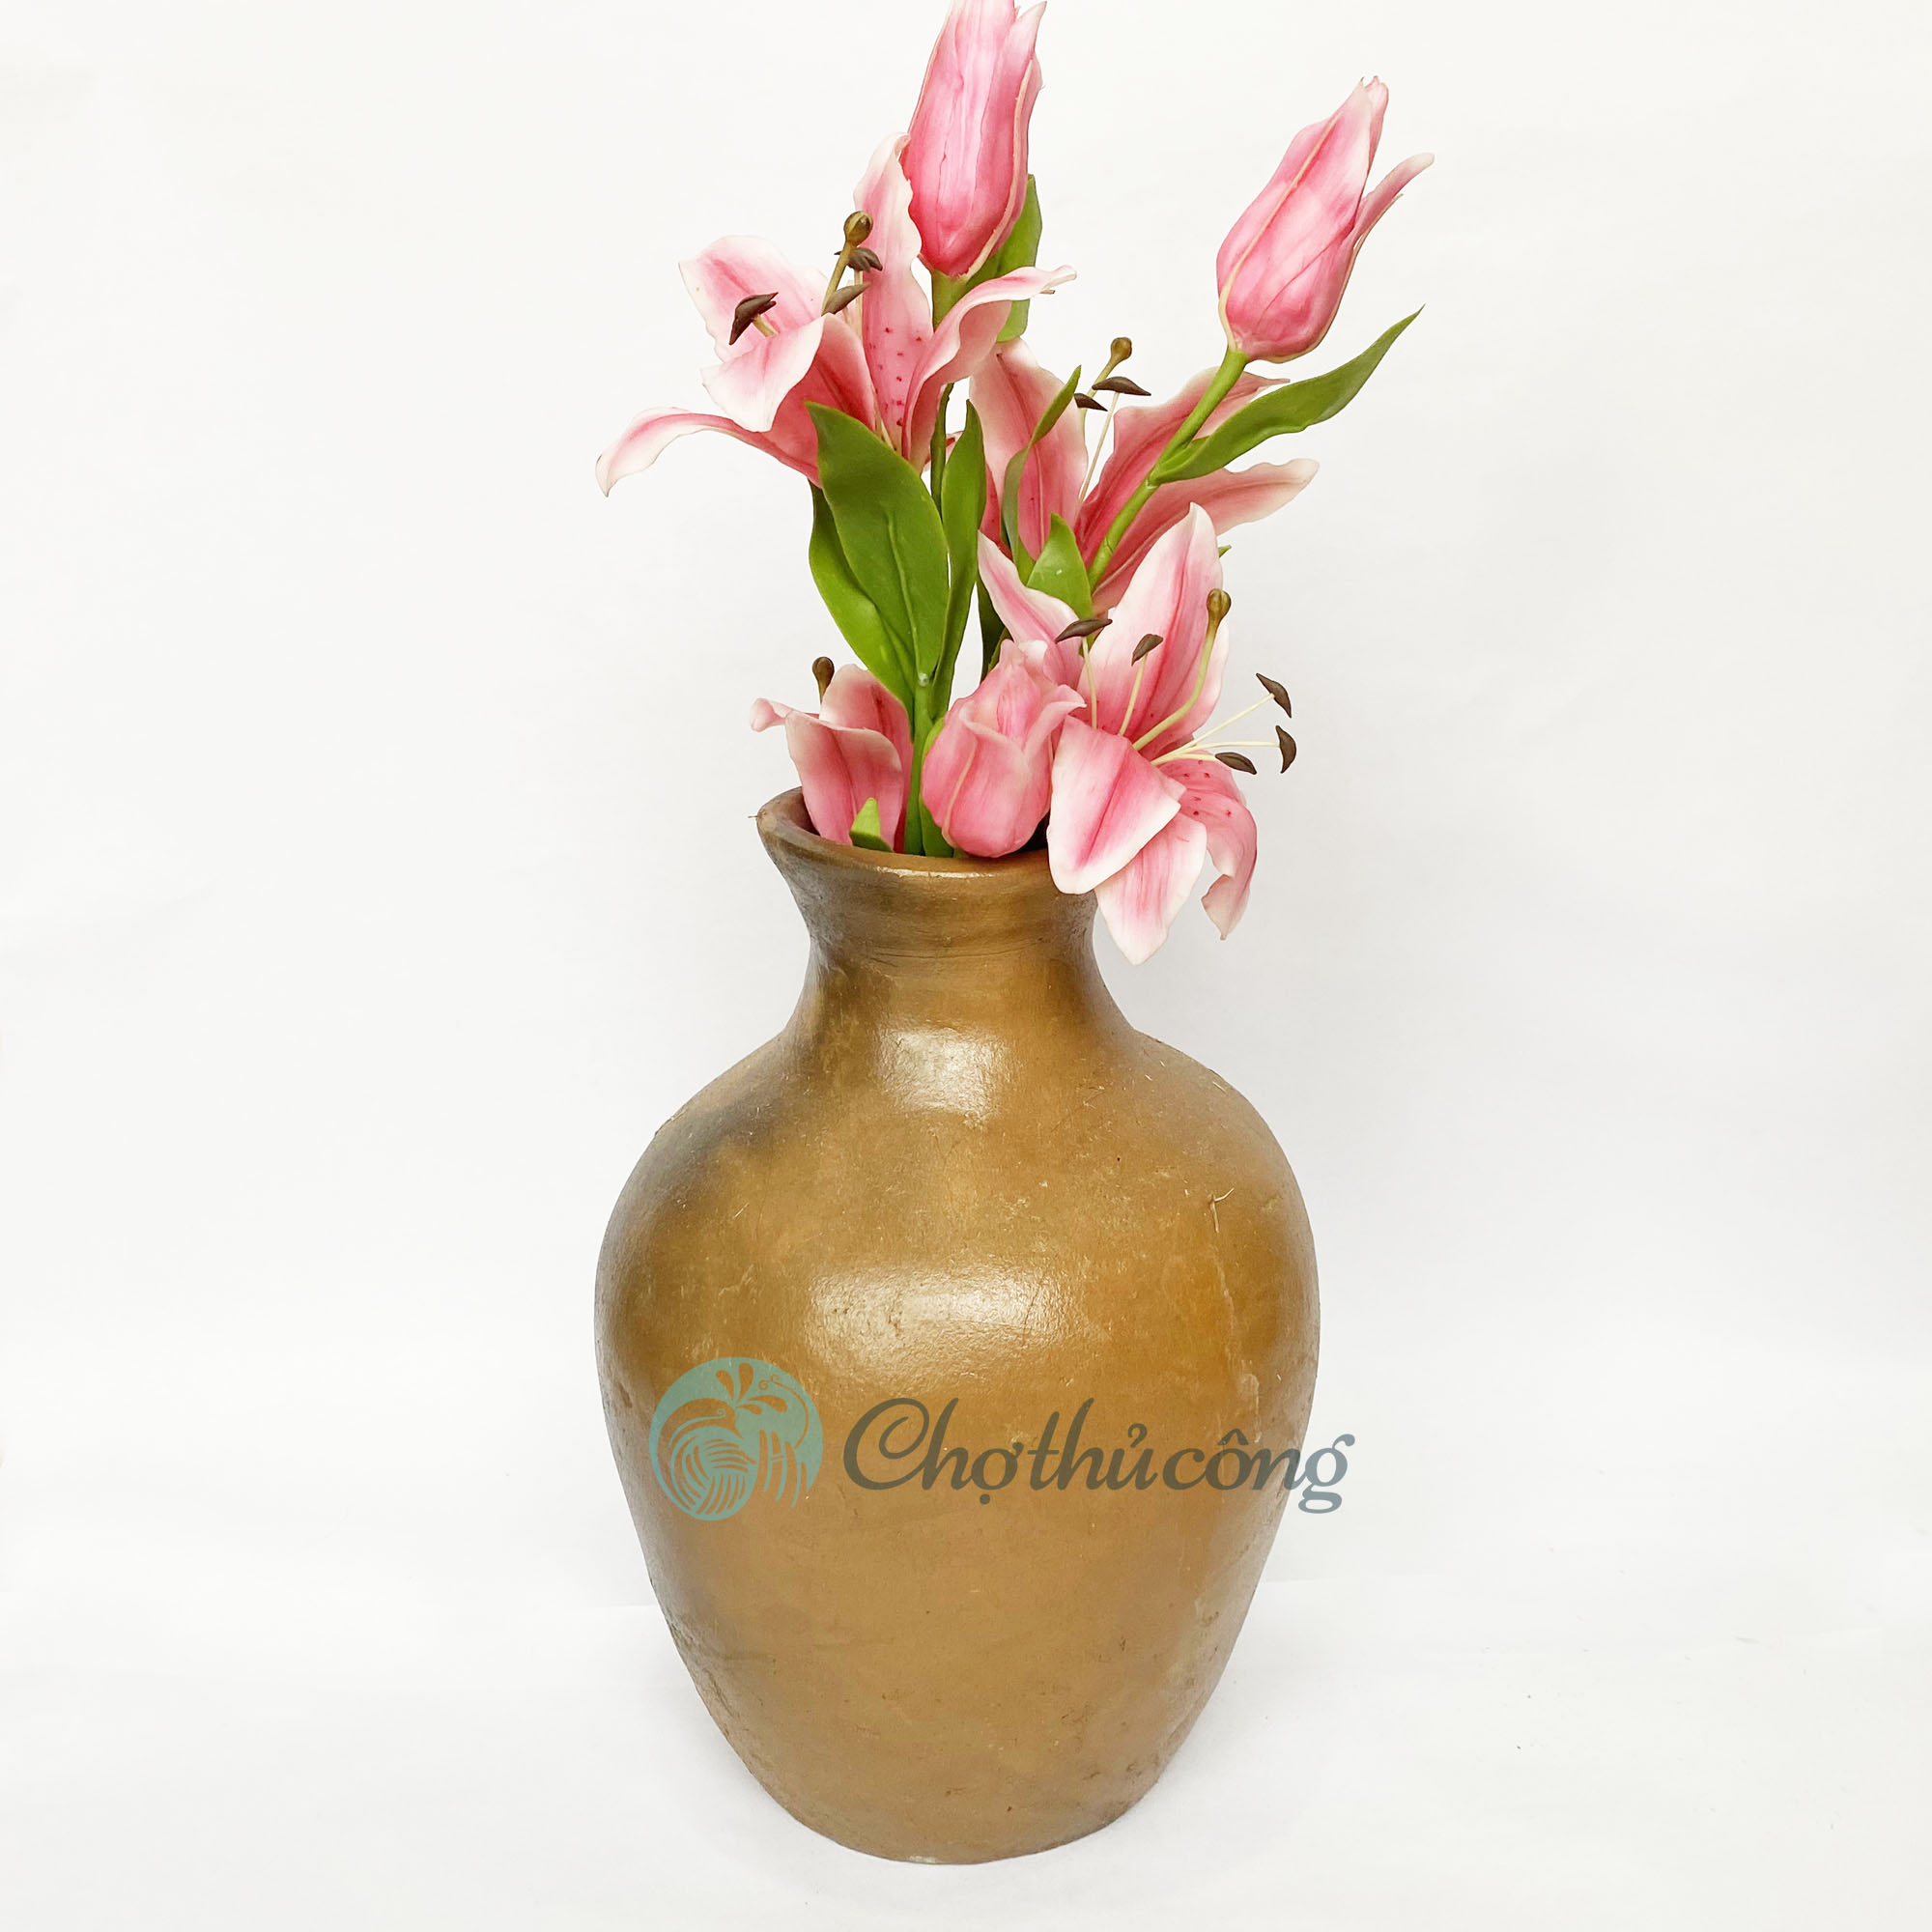 Bình hoa to vintage, Bình gốm cắm hoa decor, lọ hoa chậu đất nung thủ công Gốm Chăm Bàu Trúc trang trí handmade terracotta